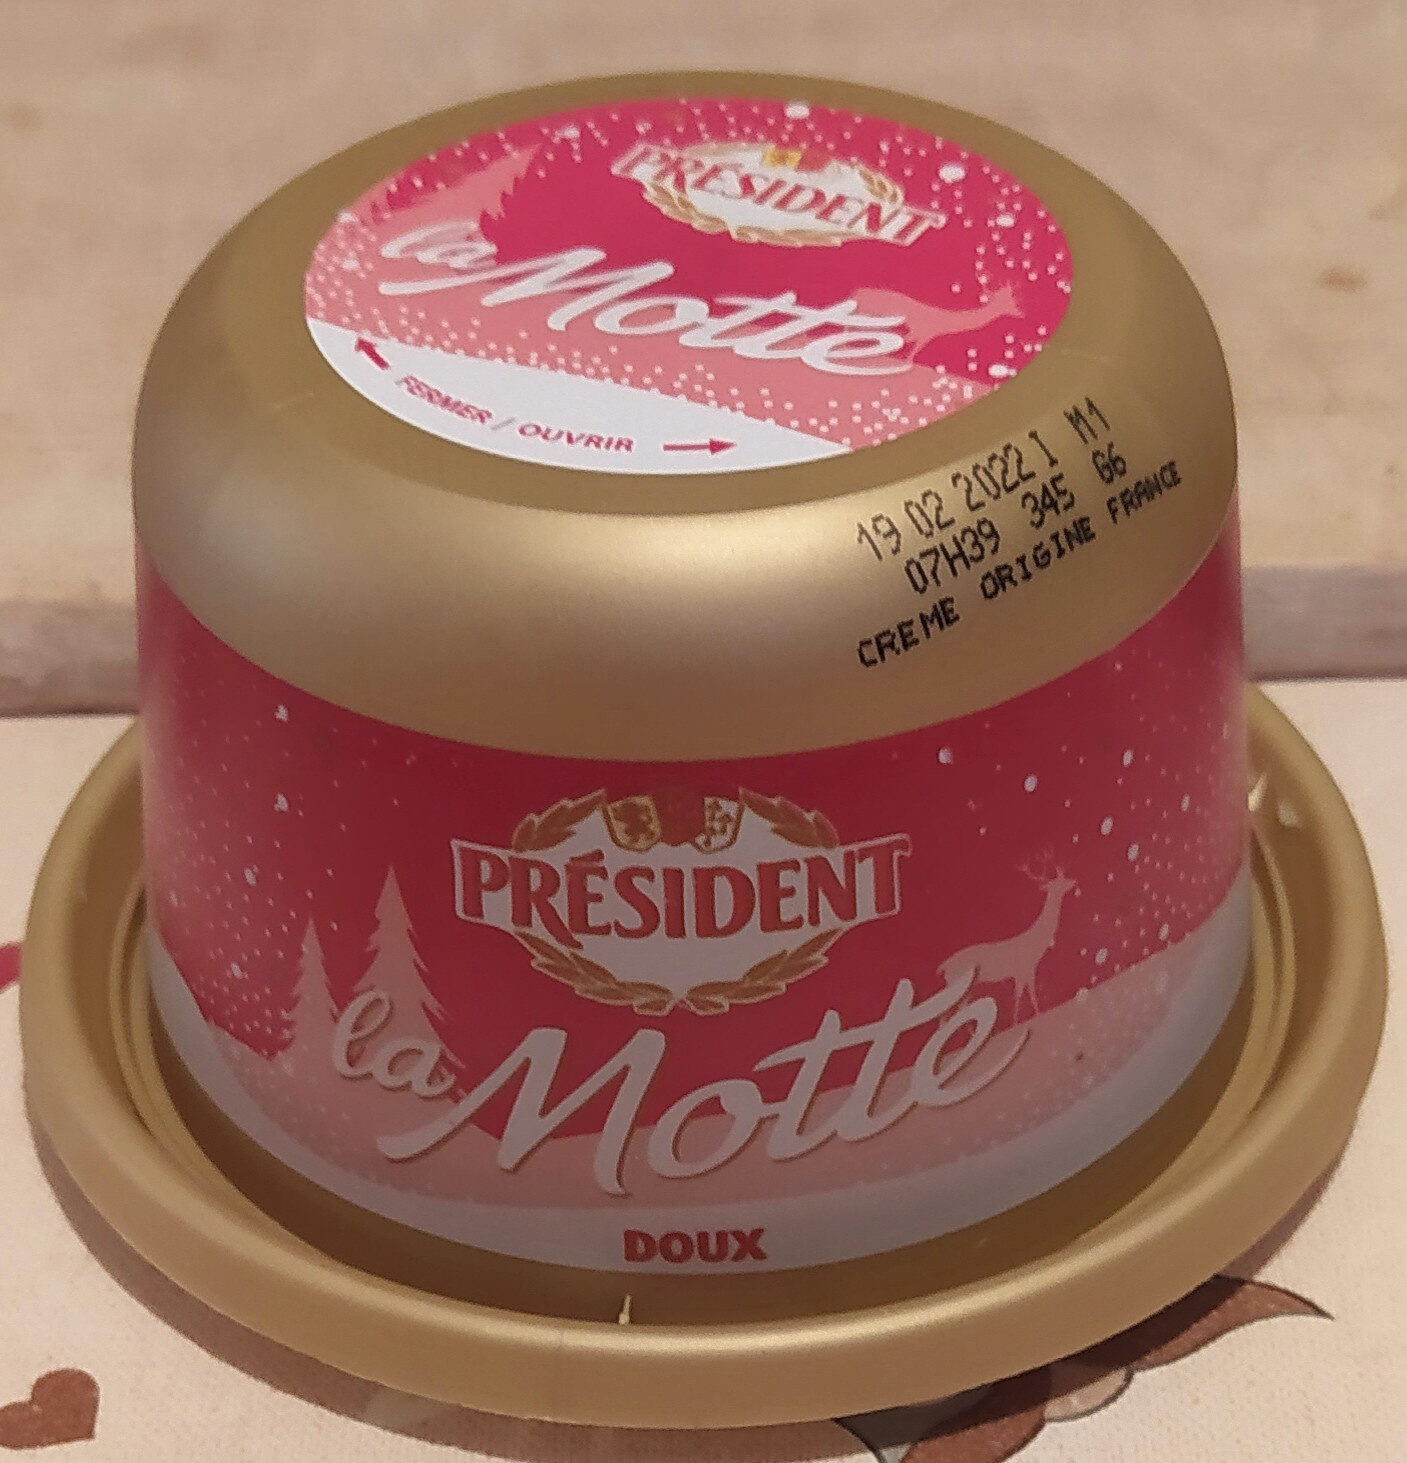 La Motte Beurre doux pasteurisé 82 % de mat. gr. eurre doux pasteurisé 82 % de mat. gr. - Produkt - fr